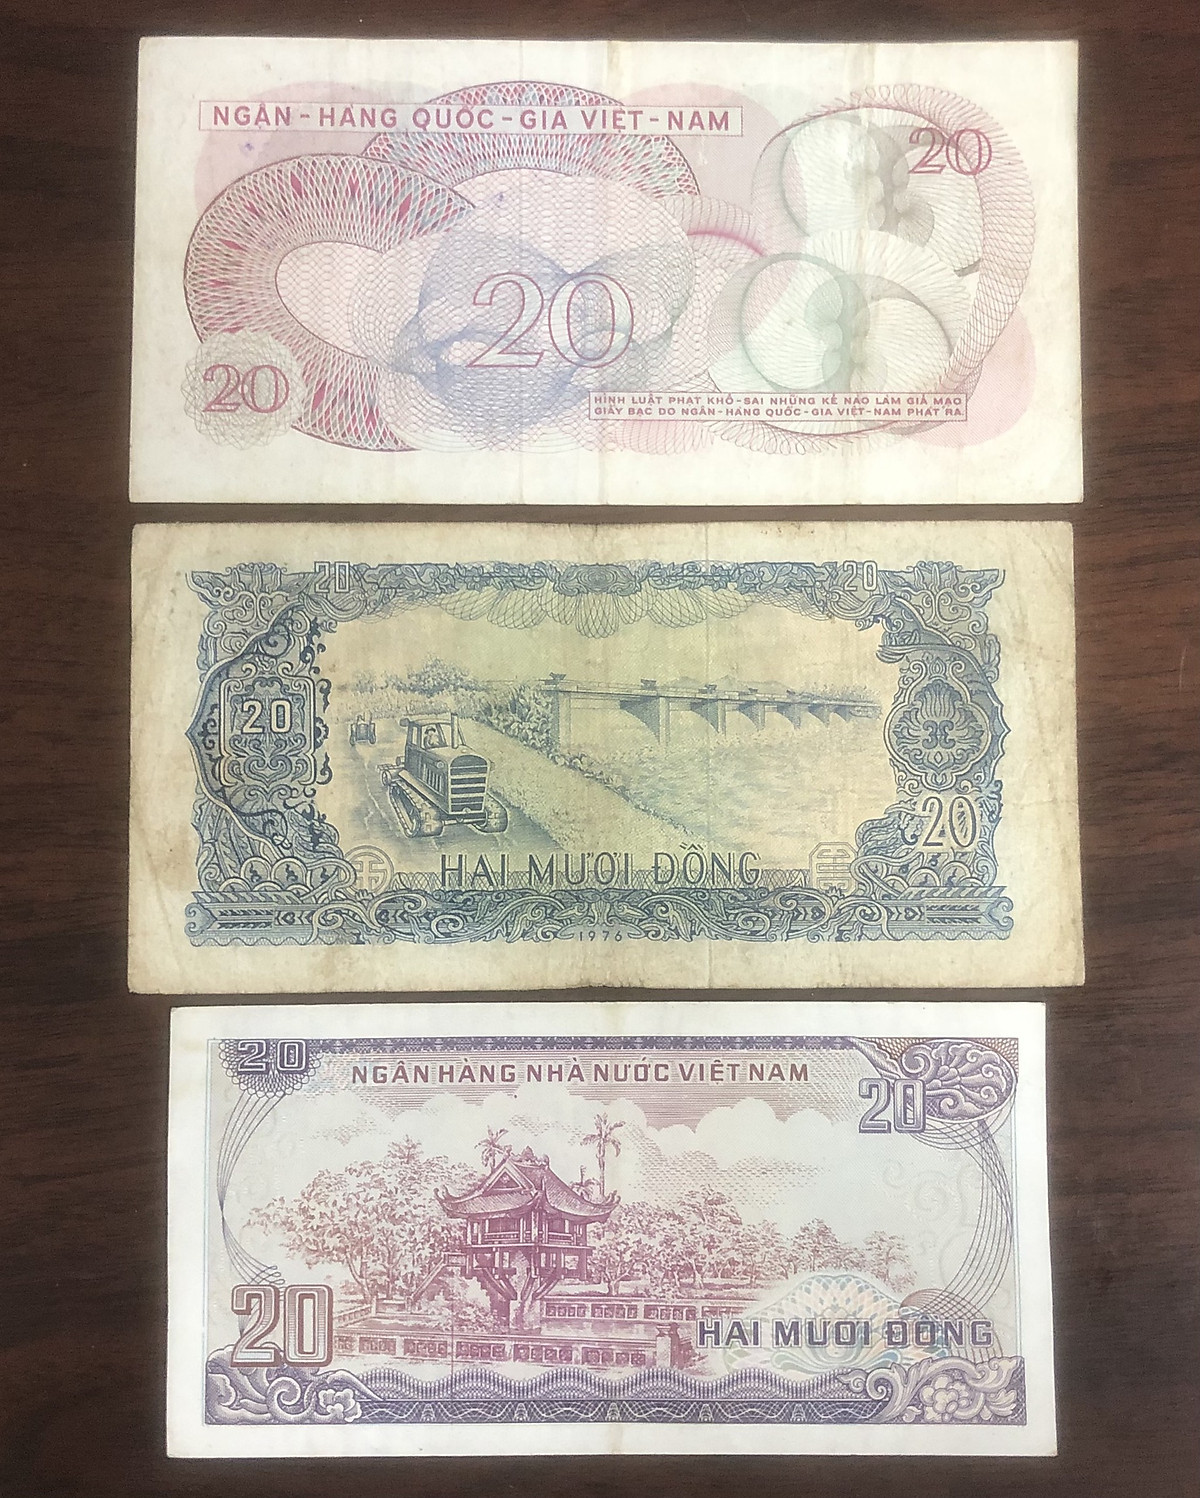 Tiền Việt Nam mệnh giá 20 đồng, 3 tờ phát hành khác giai đoạn - Chất lượng như hình, Tiền xưa thật 100%